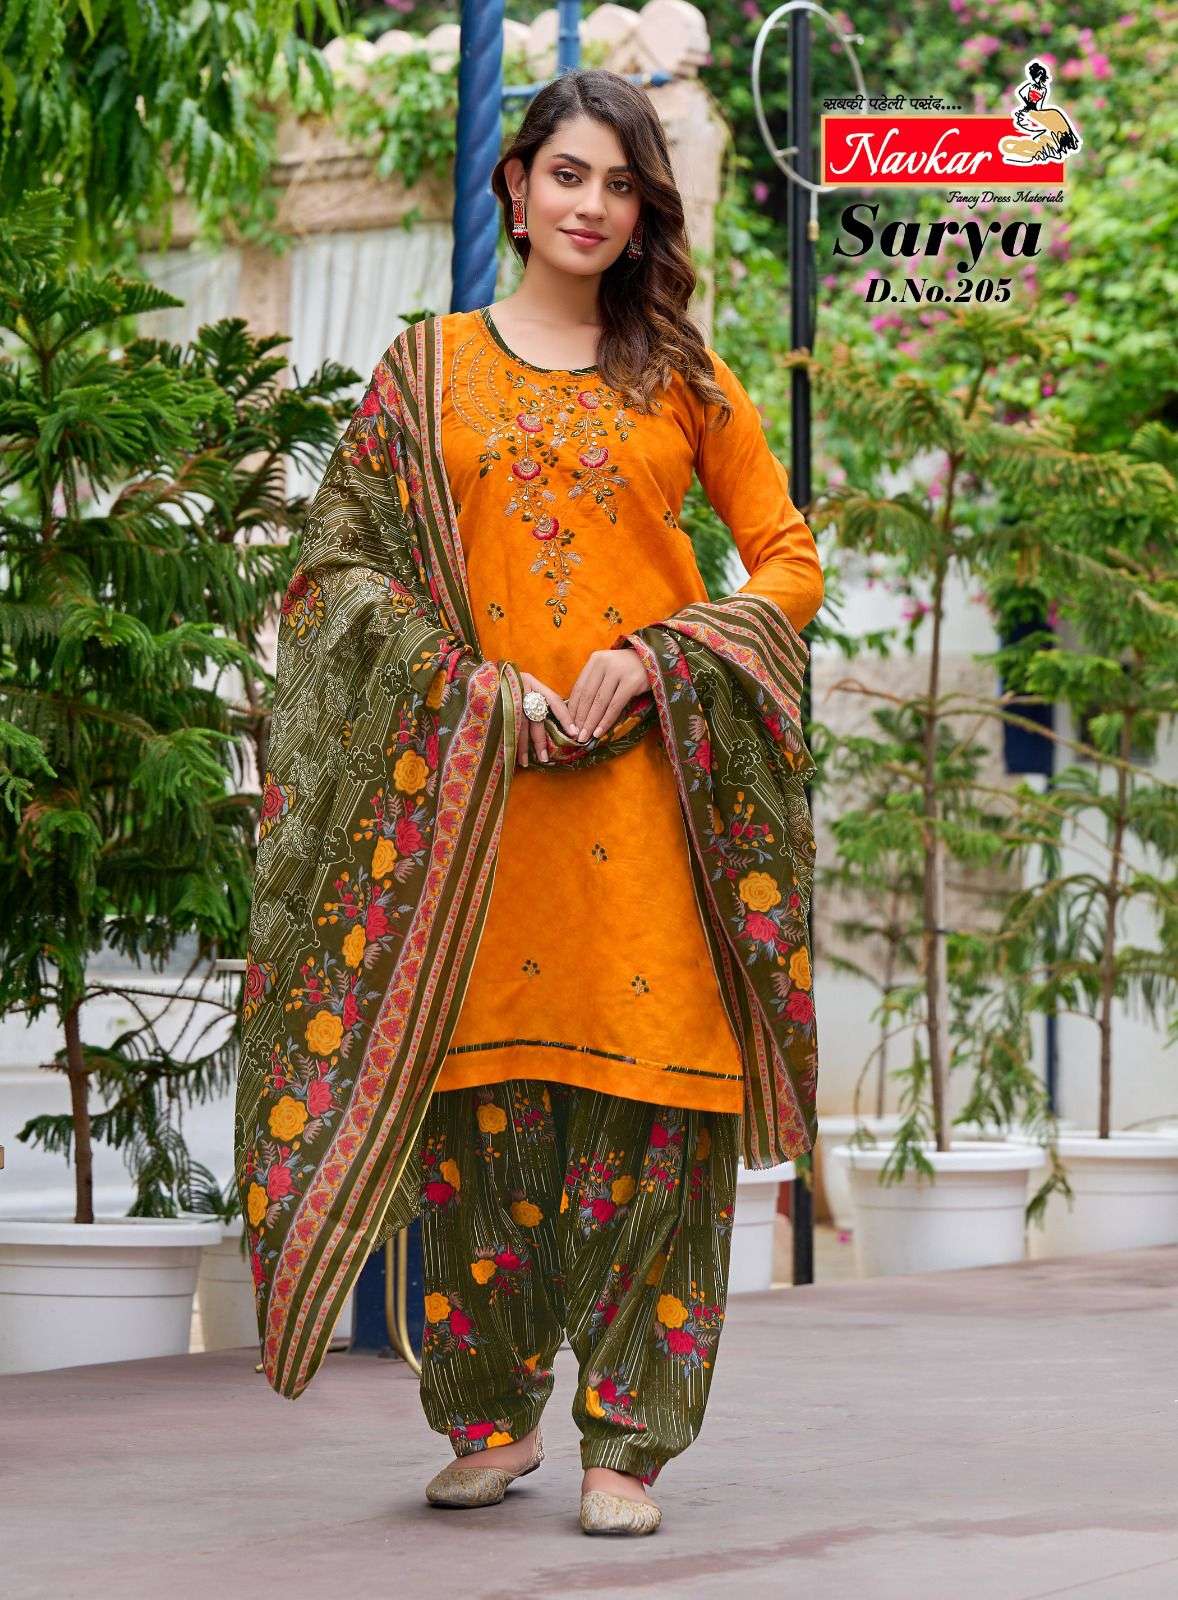 navkar saarya vol-2 201-210 series designer wedding wear patiyala suit wholesaler surat gujarat